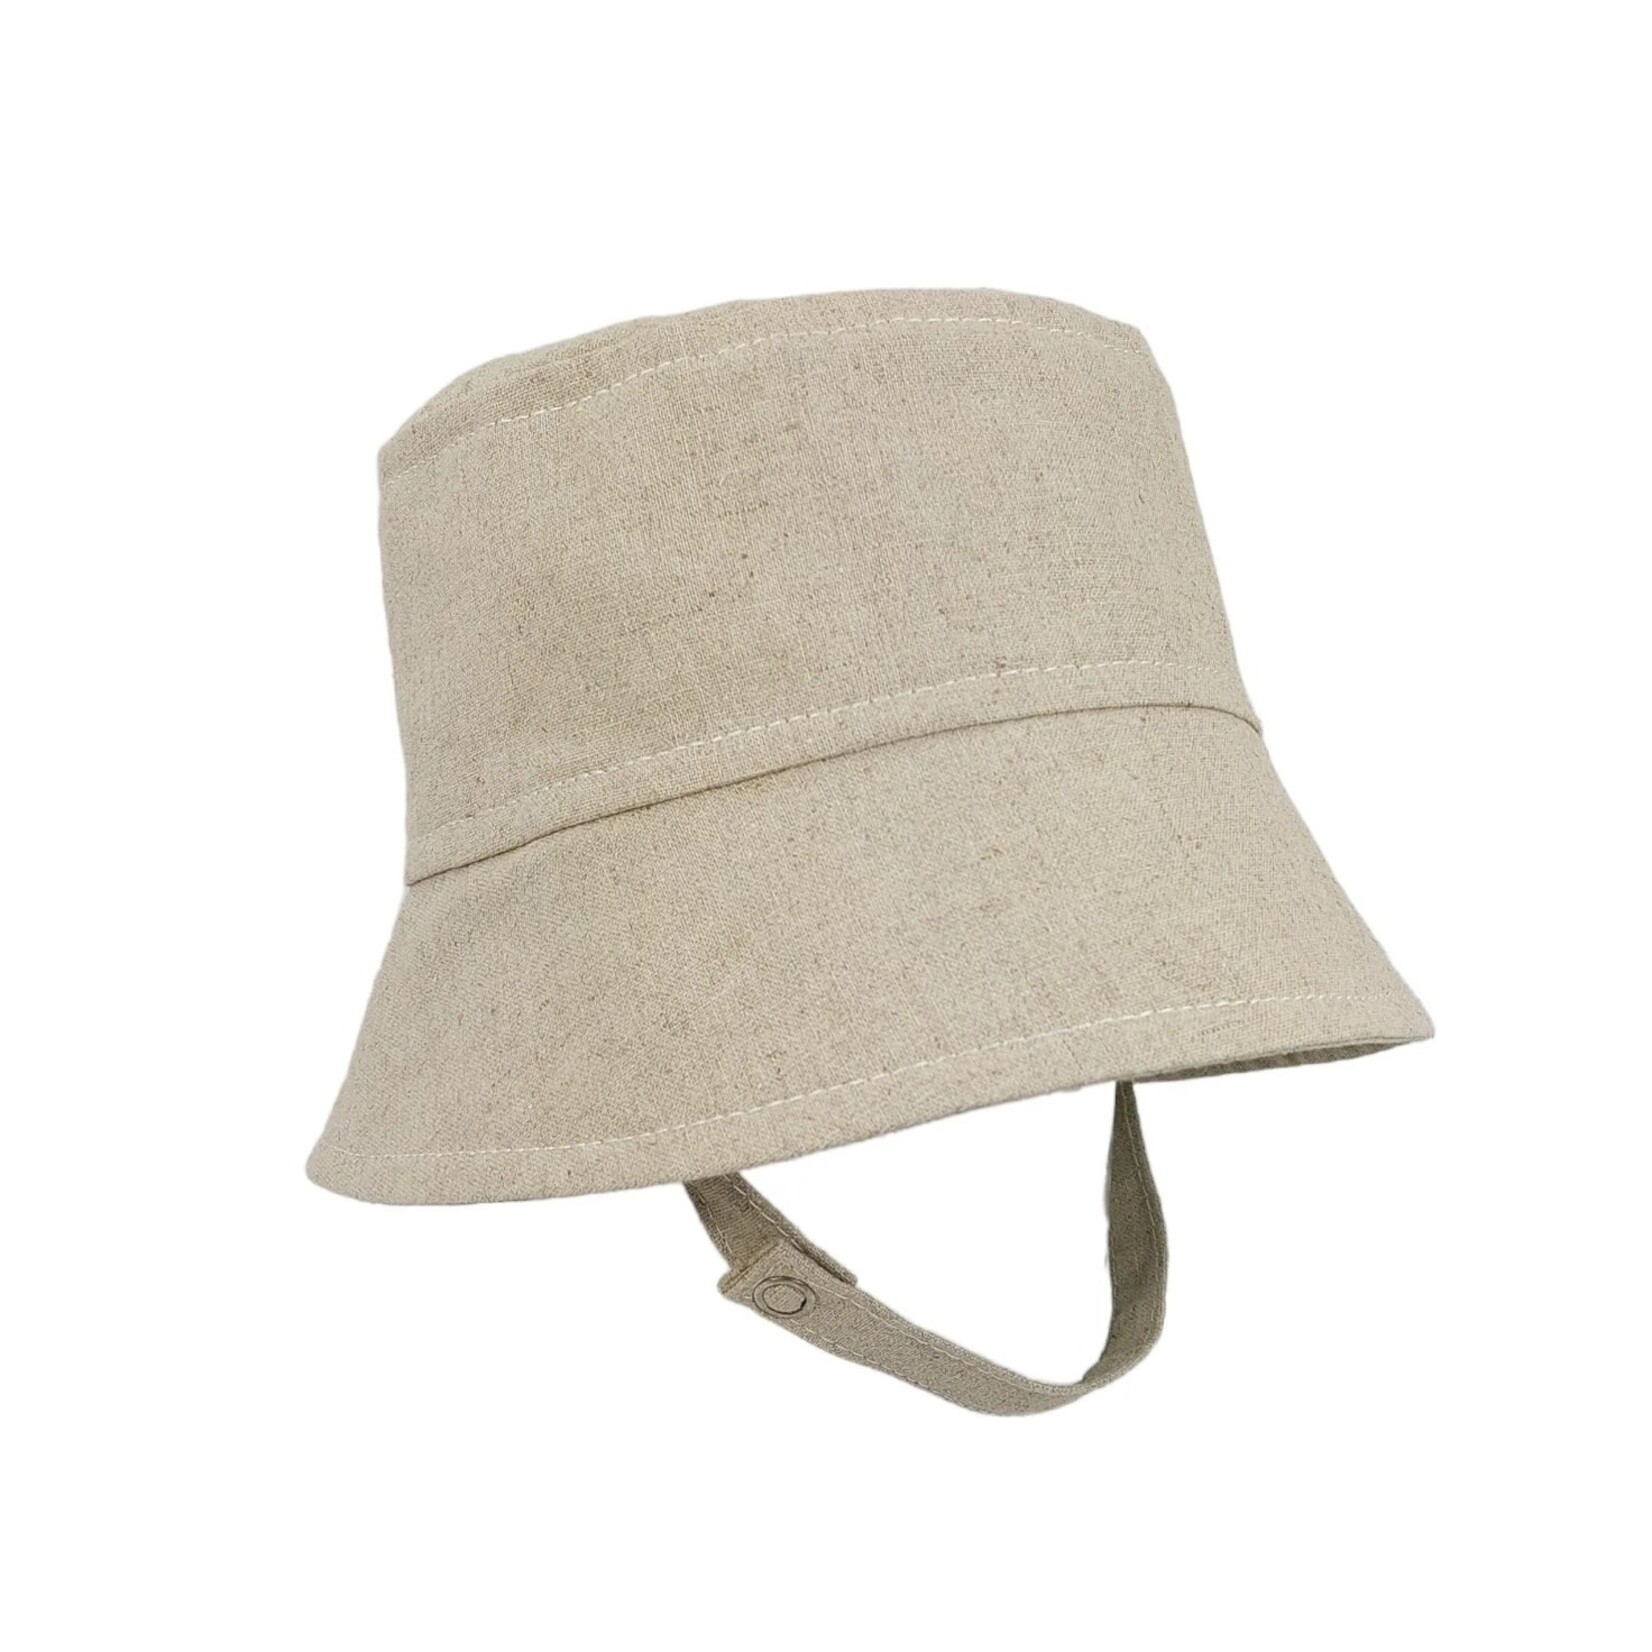 Tirigolo TIRIGOLO - Chapeau d'été classique ajustable en lin - Beige